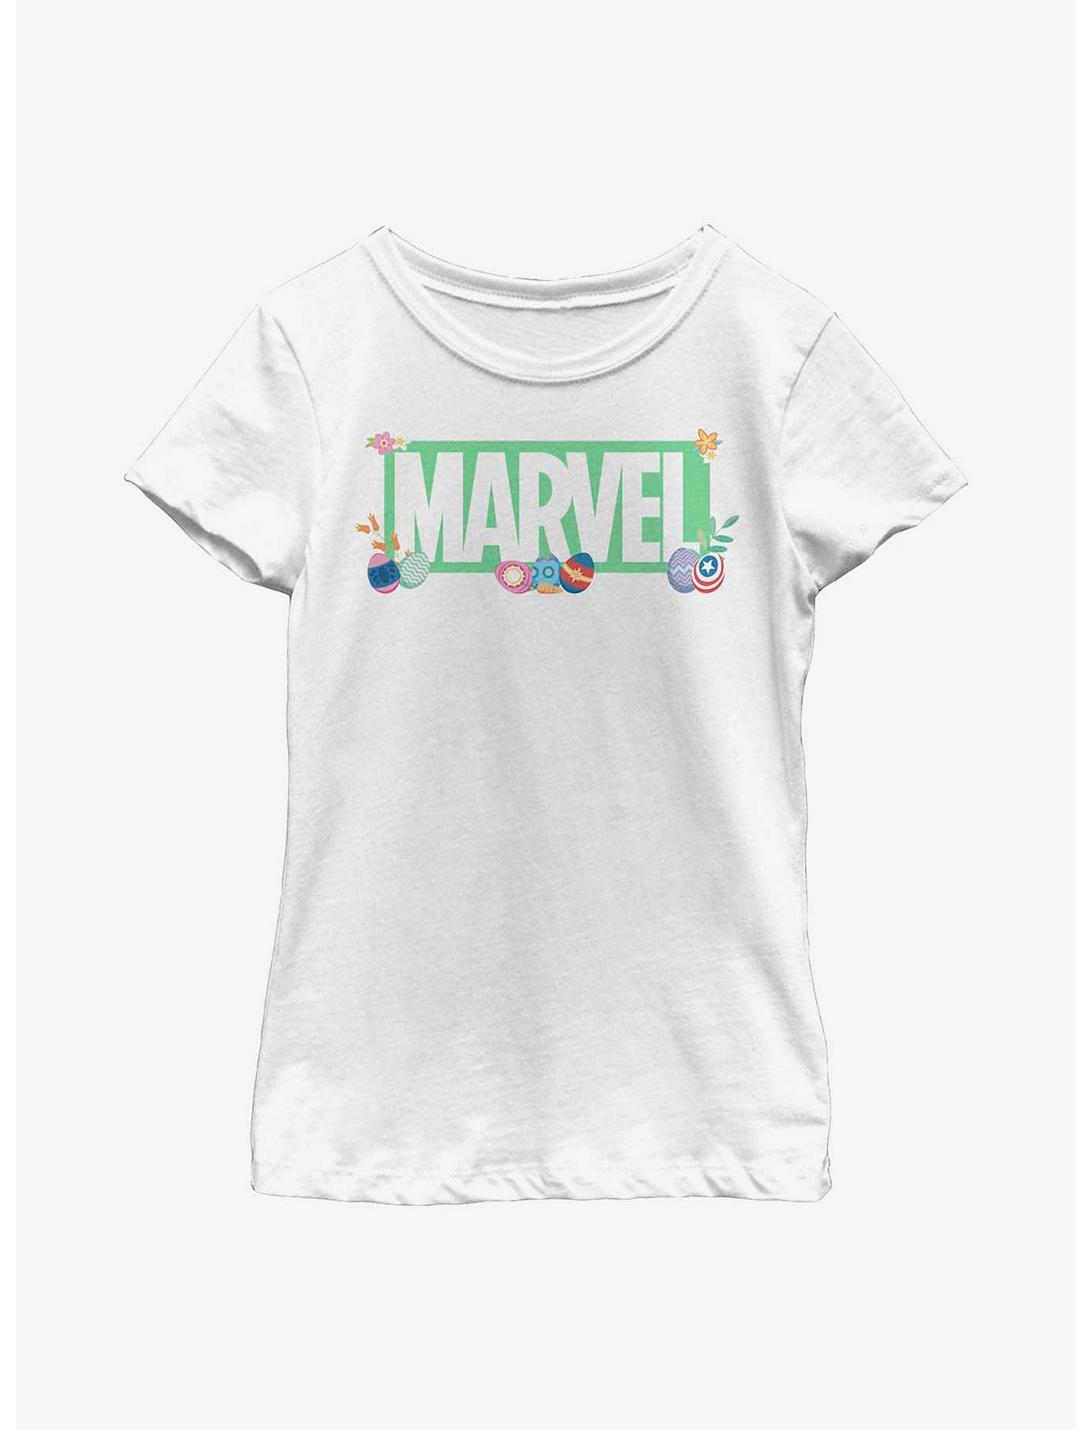 Marvel Avengers Marvel Easter Logo Youth Girls T-Shirt, WHITE, hi-res